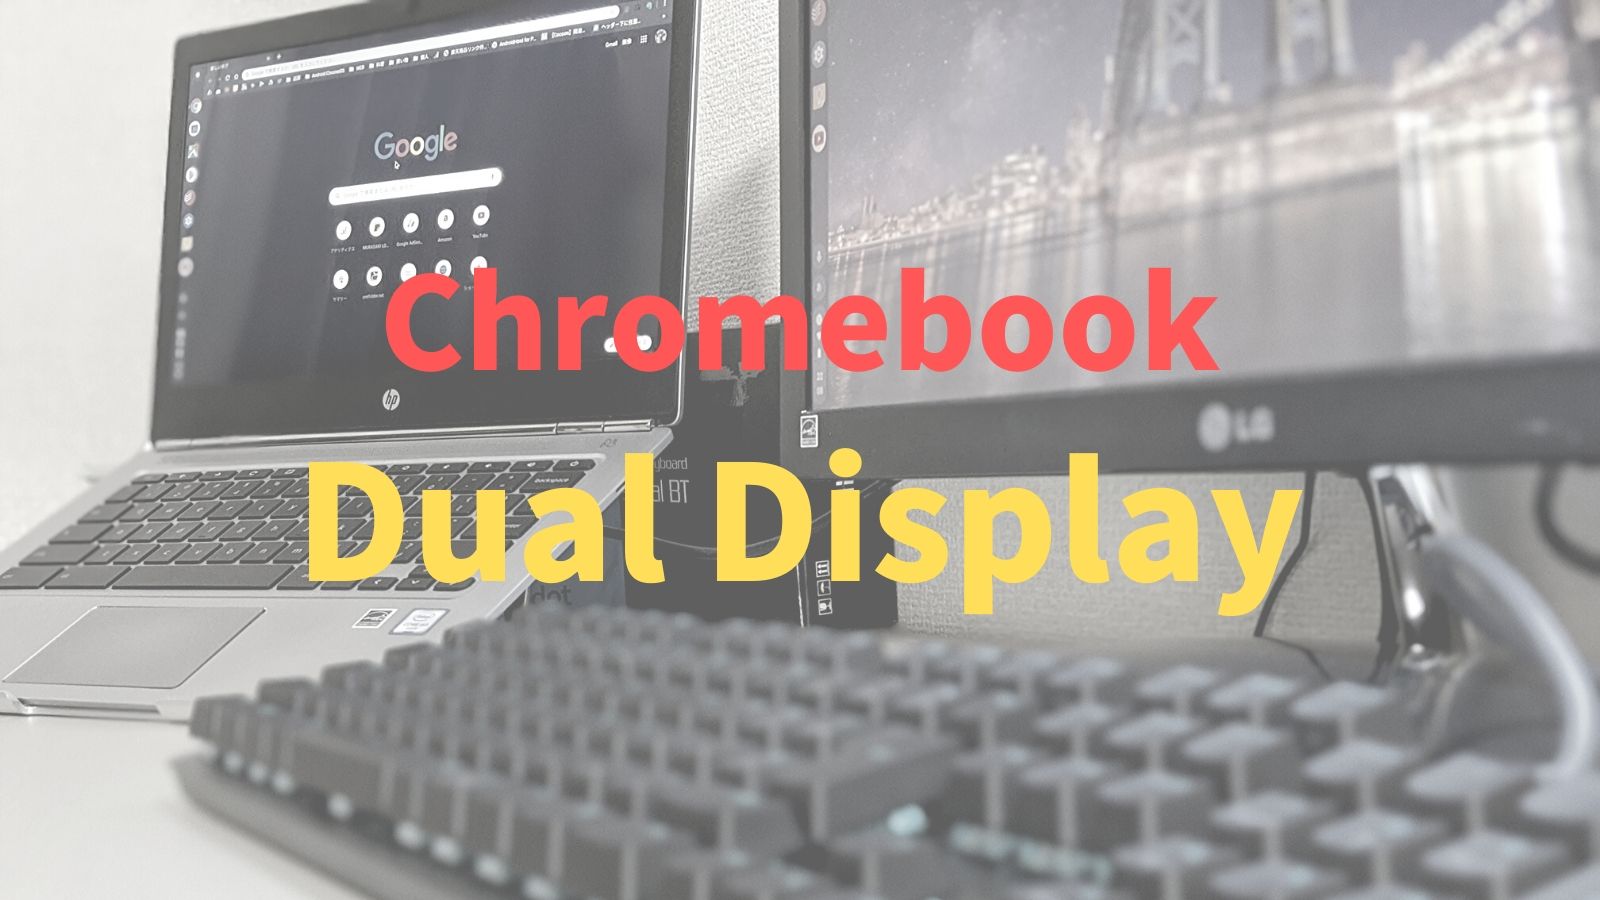 Chromebookでデュアルディスプレイ、使用感や周辺機器など